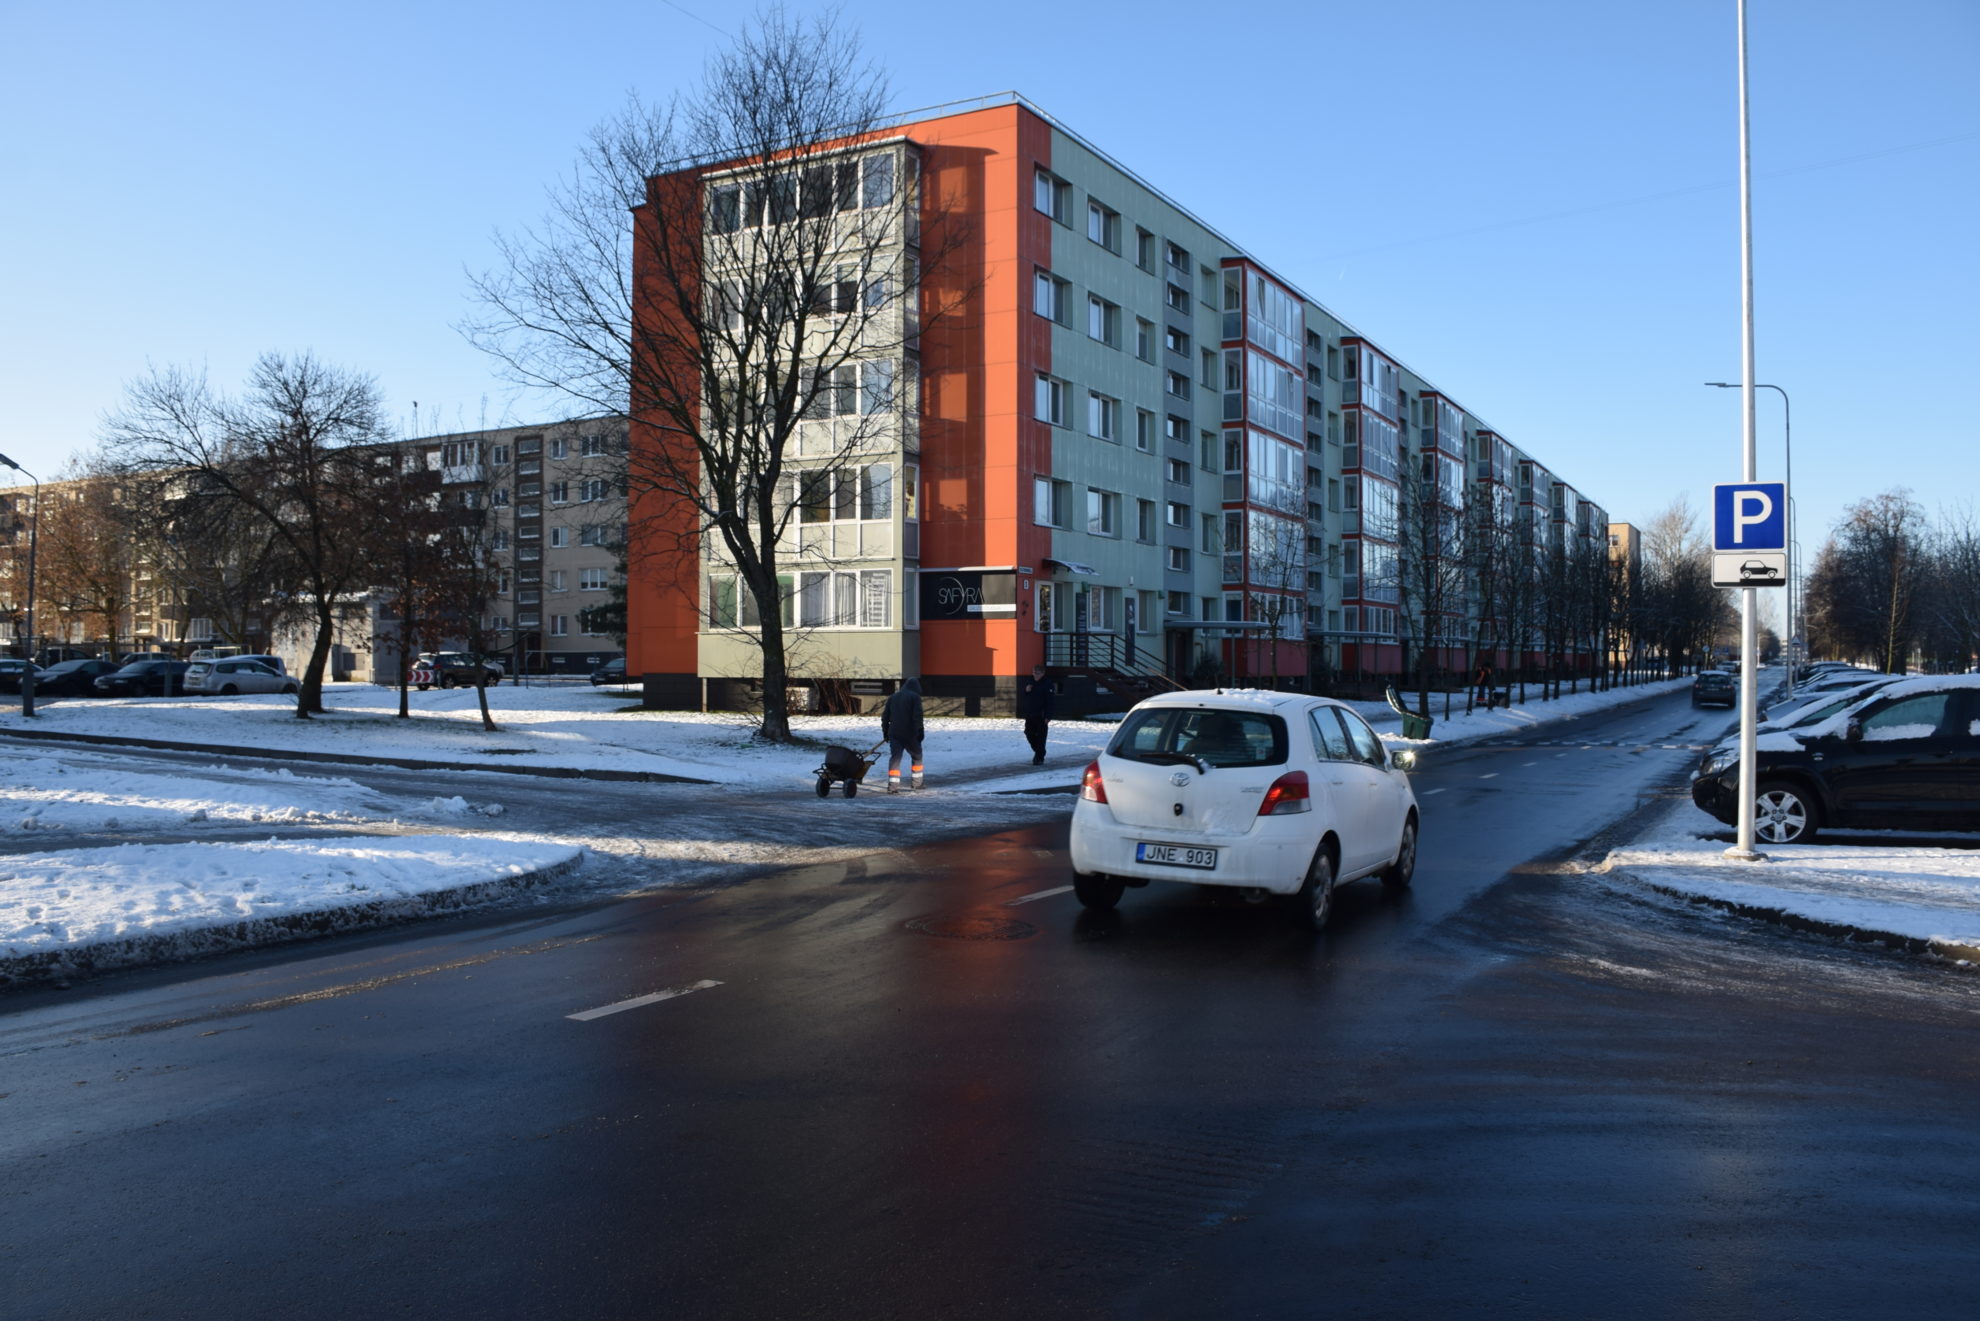 Panevėžio miesto savivaldybė baigia dar vieną gatvių infrastruktūros gerinimo projektų – Statybininkų gatvės rekonstrukciją.